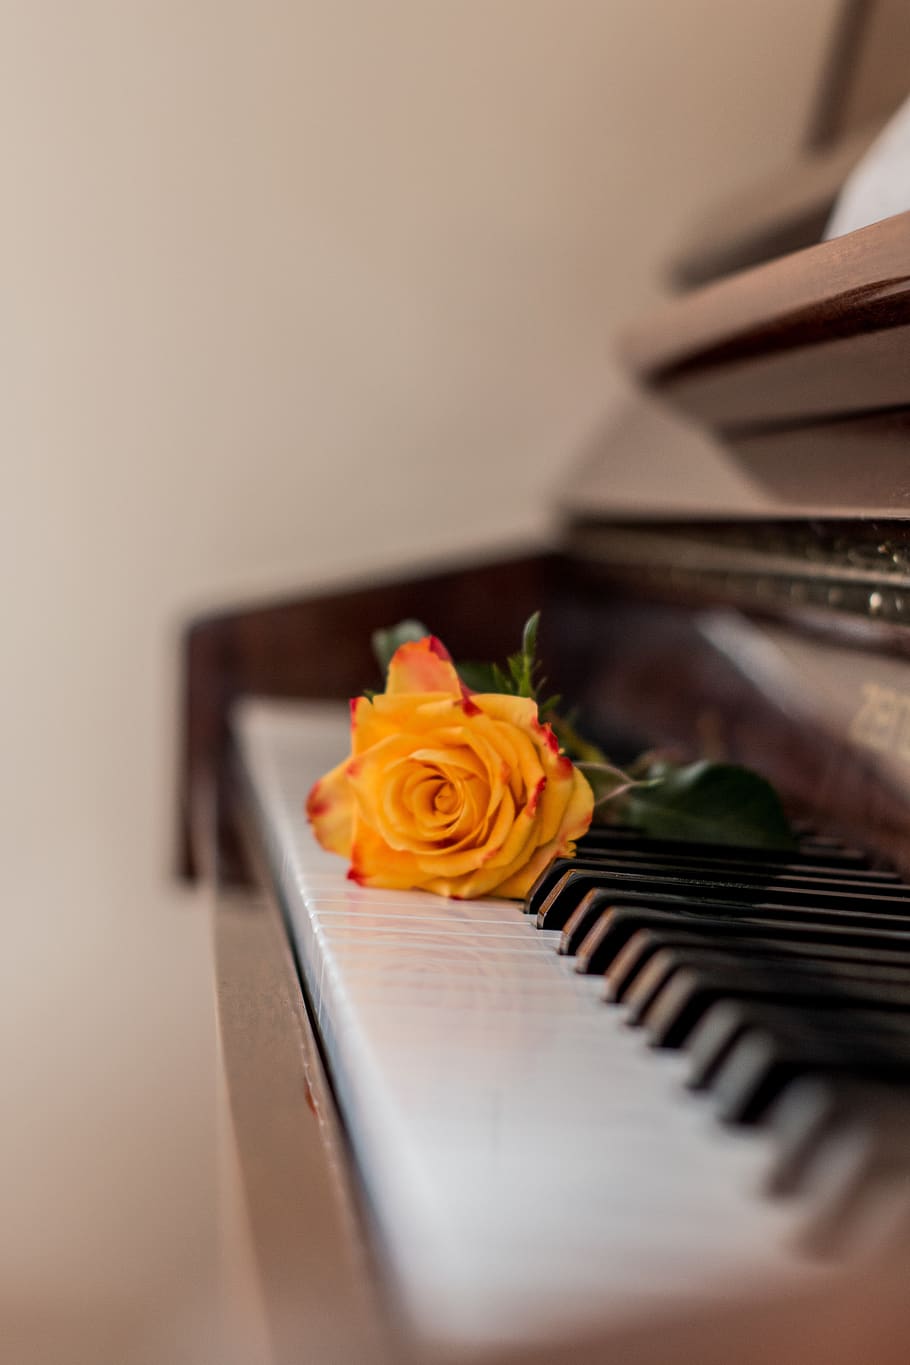 piano, música, rosa, teclas de piano, instrumento musical, papel tapiz del teléfono, flor, planta floreciendo, rosa - flor, enfoque selectivo